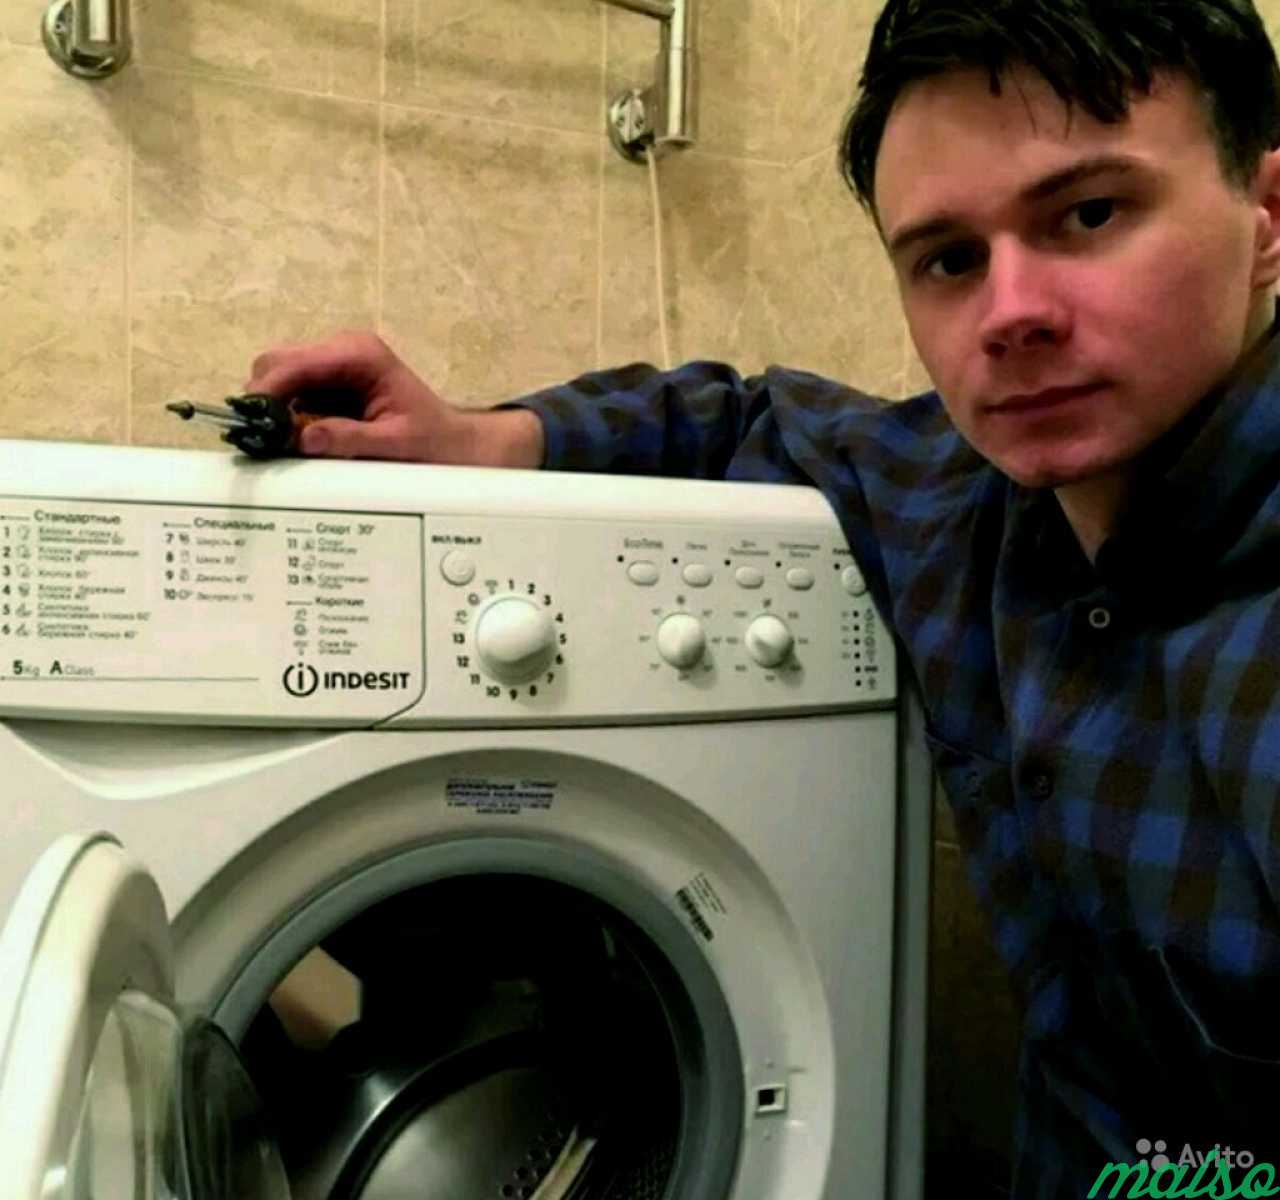 Ремонт стиральных машин индезит в москве. Мастер стиральная машина Индезит. Мастер по стиральным машинам. Мастер по ремонту стиральных машинок. Ремонт стиральных машин.